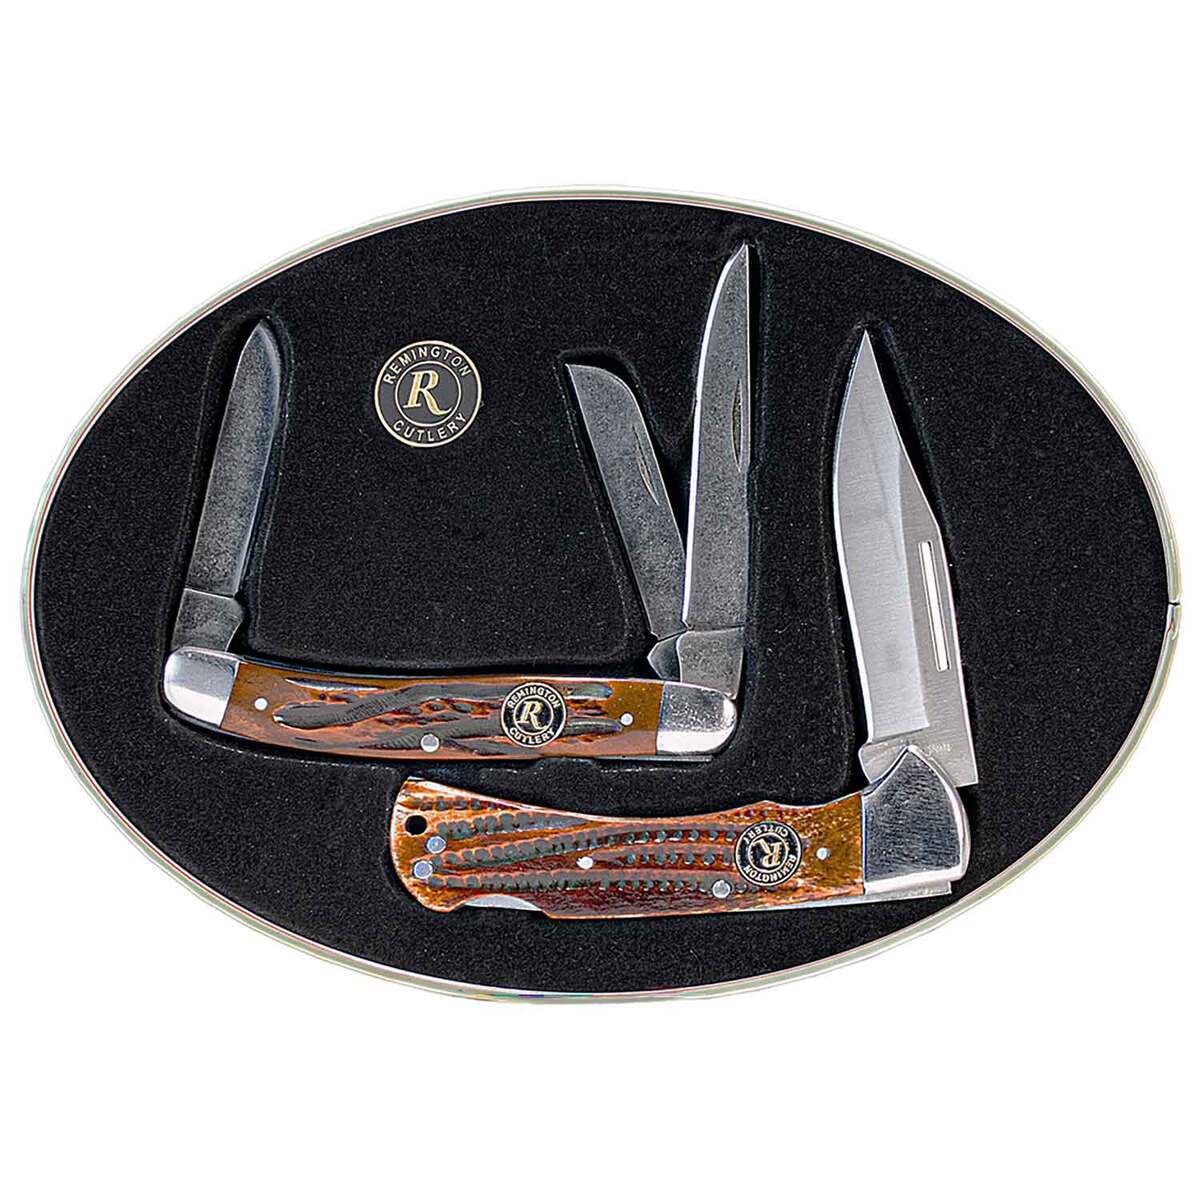 https://www.sportsmans.com/medias/remington-american-tradition-gift-tin-knife-set-brown-bone-1764460-1.jpg?context=bWFzdGVyfGltYWdlc3wxNTg5ODh8aW1hZ2UvanBlZ3xoNTYvaDliLzEwNzczODA5Mzk3NzkwLzE3NjQ0NjAtMV9iYXNlLWNvbnZlcnNpb25Gb3JtYXRfMTIwMC1jb252ZXJzaW9uRm9ybWF0fDQ5ODA2YTRmNTRkYjViZDlhMGJiNzE2N2ZjNzZiZWUxYjU0YTI1YmJjMzc0MjRmNjkwOWFkM2Q0NjRkNjkxNjk